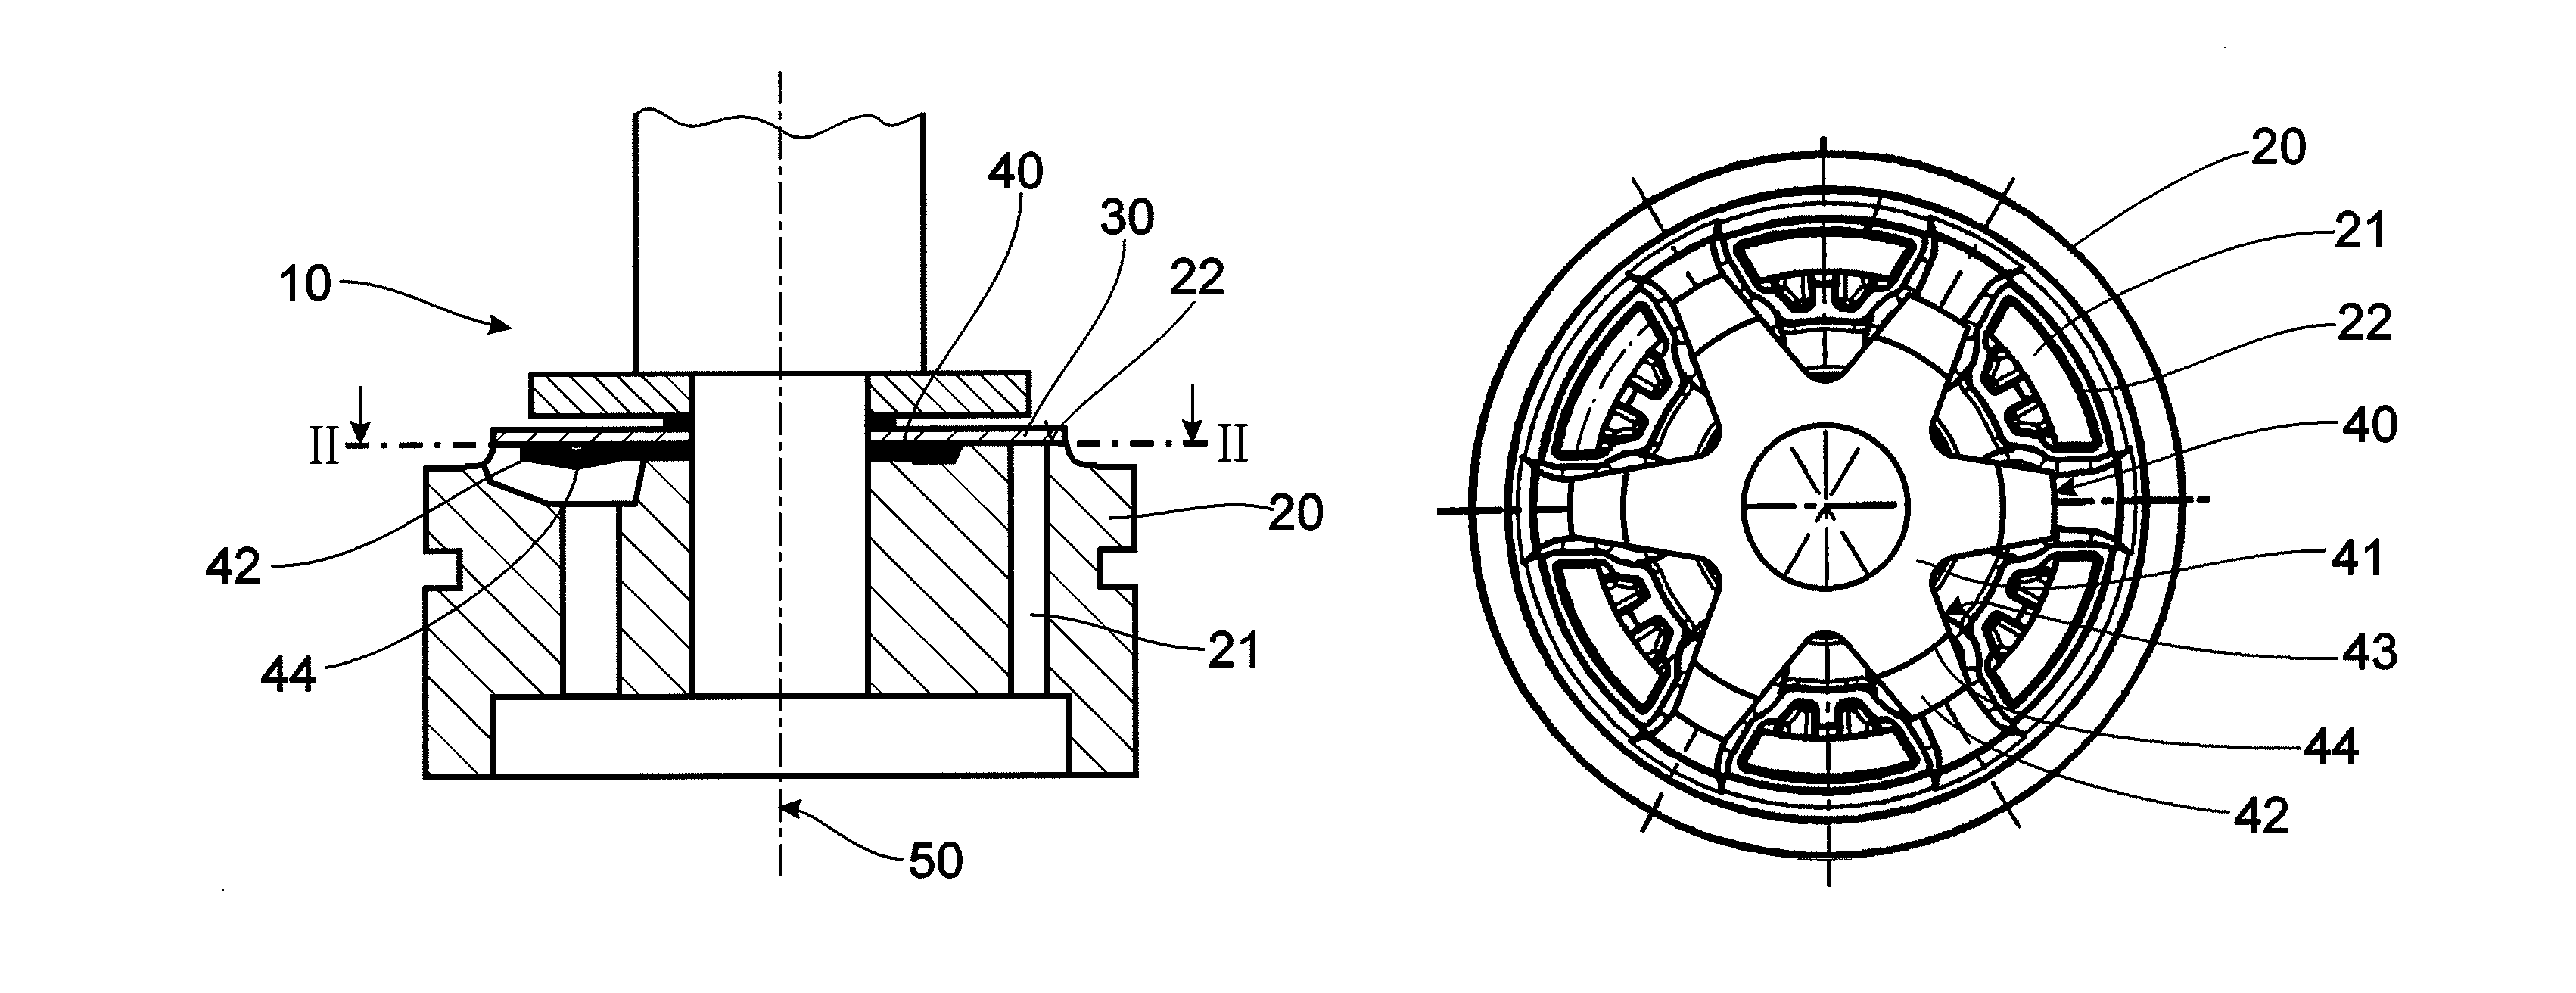 Damping valve arrangement for a vibration damper